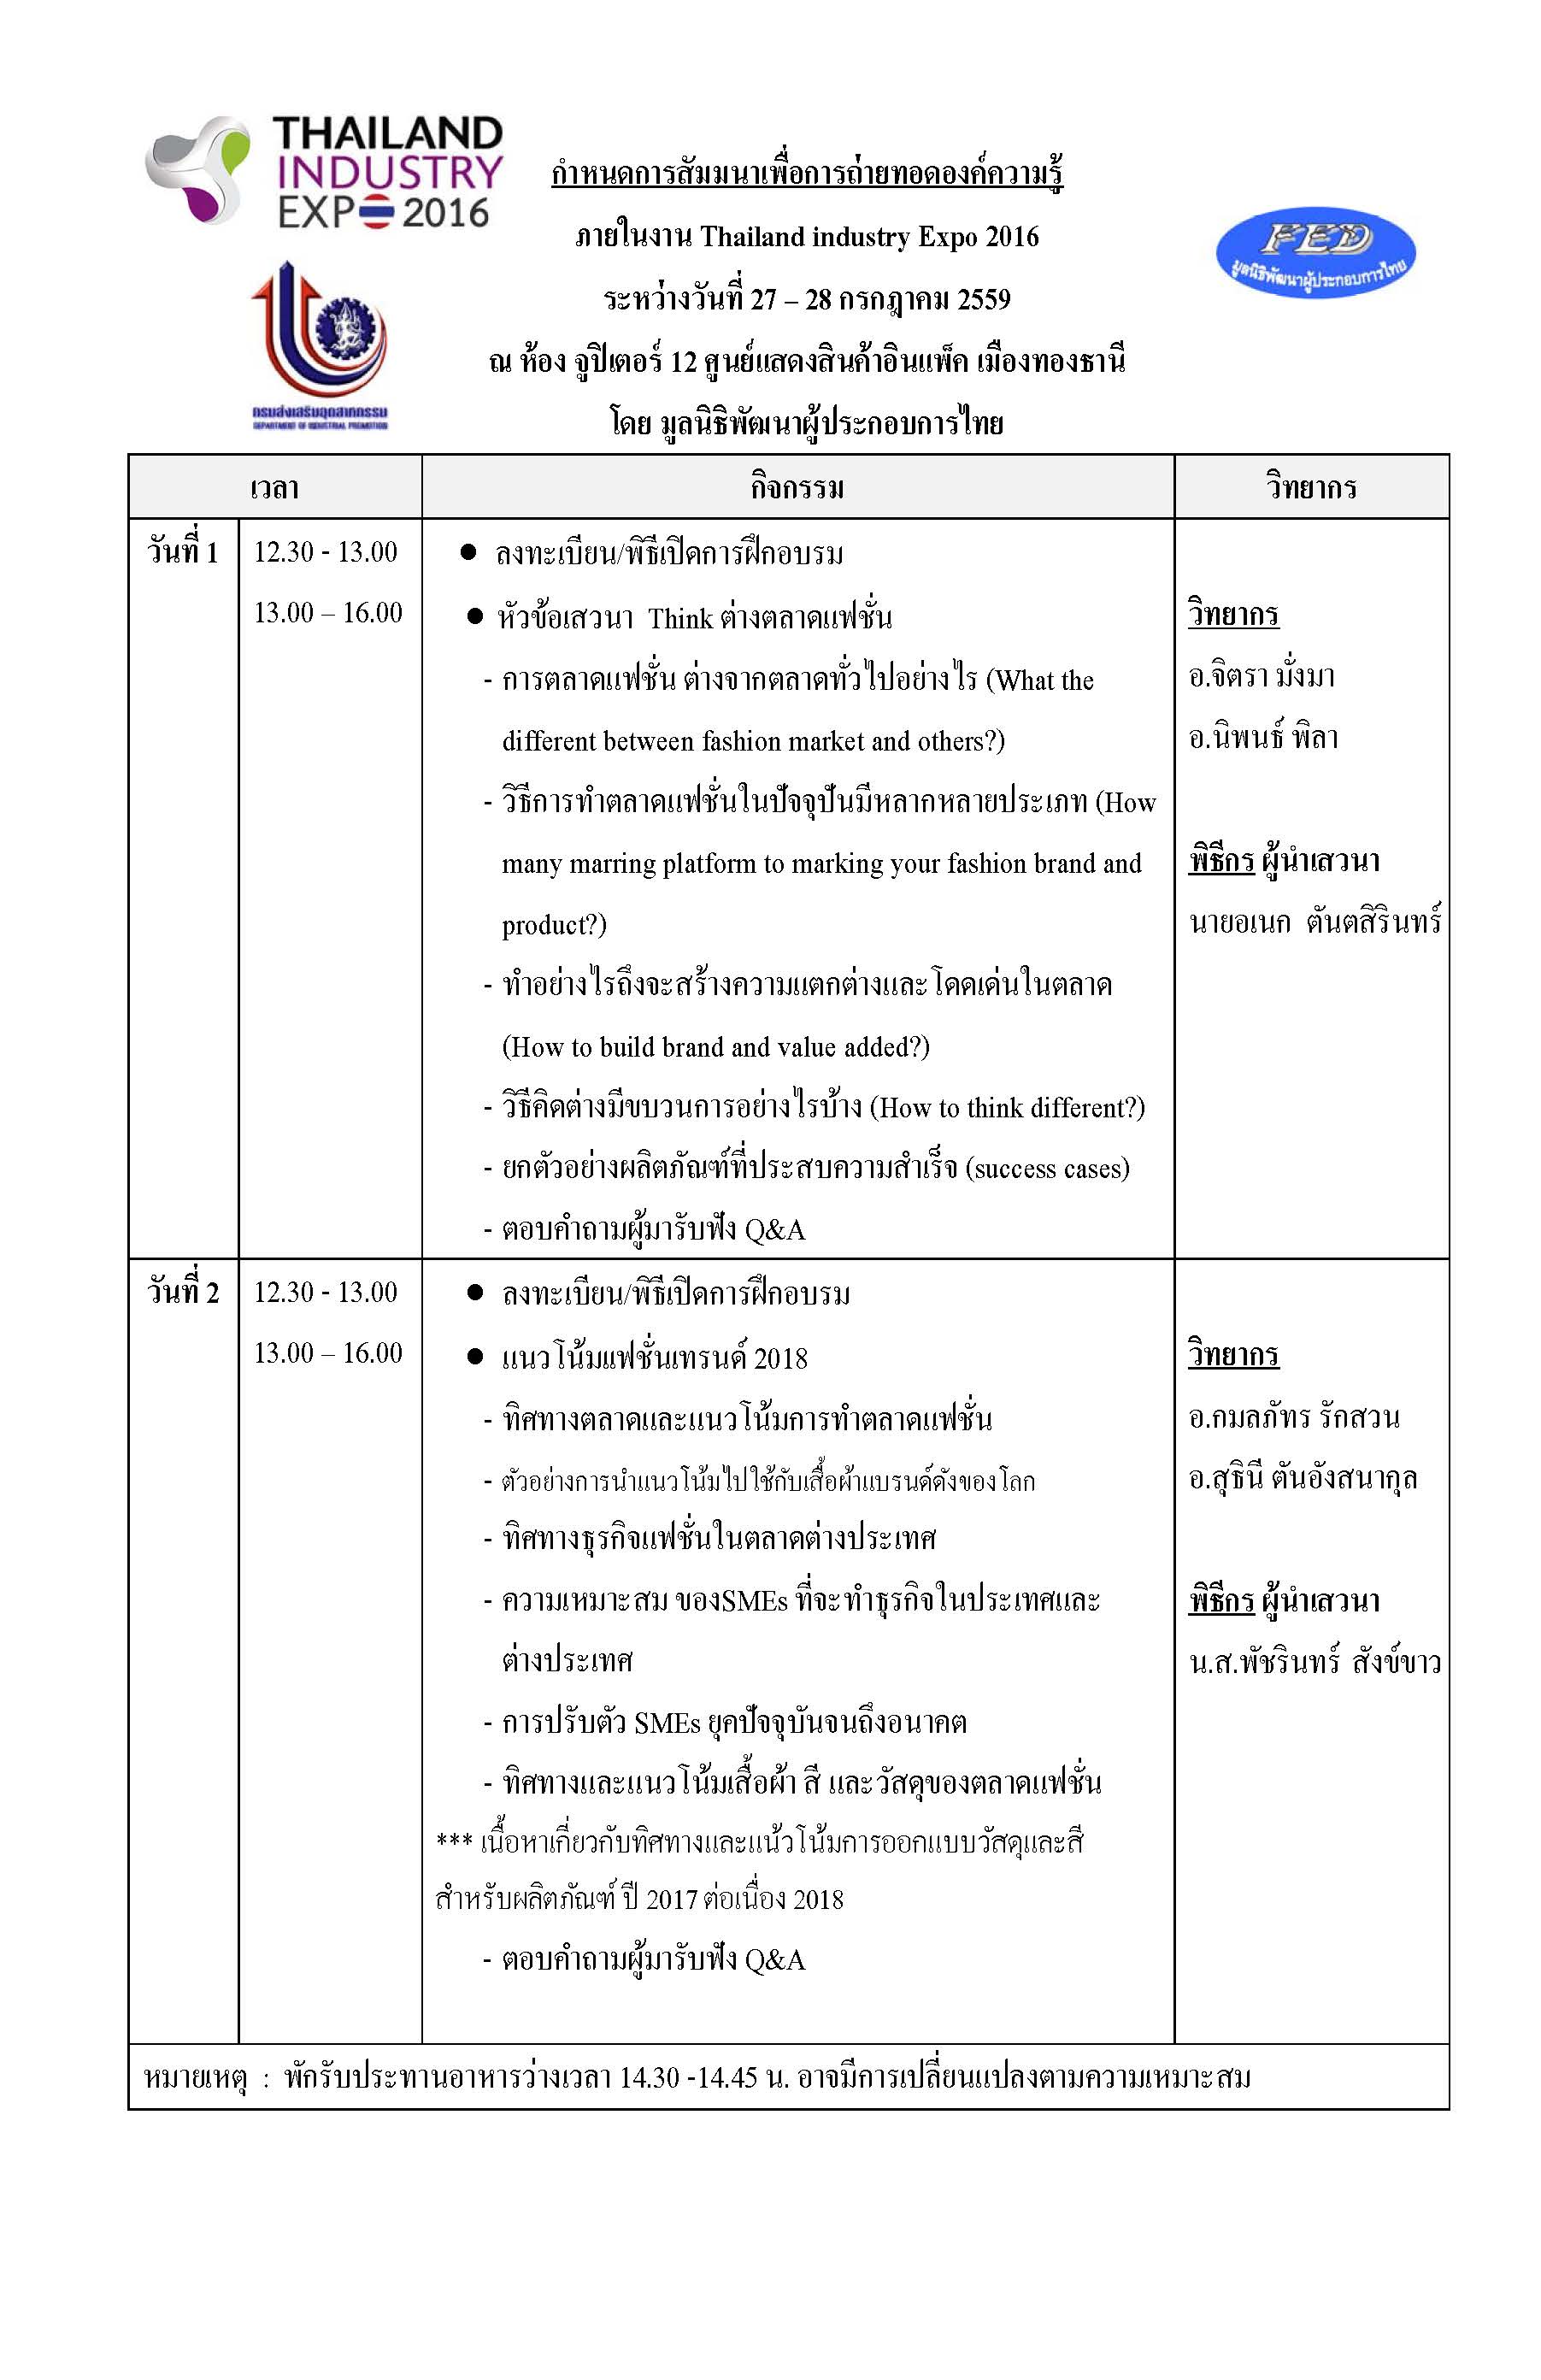 ตารางจัดงานการสัมมนาเพื่อถ่ายทอดองค์ความรู้ ภายในงาน Thailand industry Expo 2016